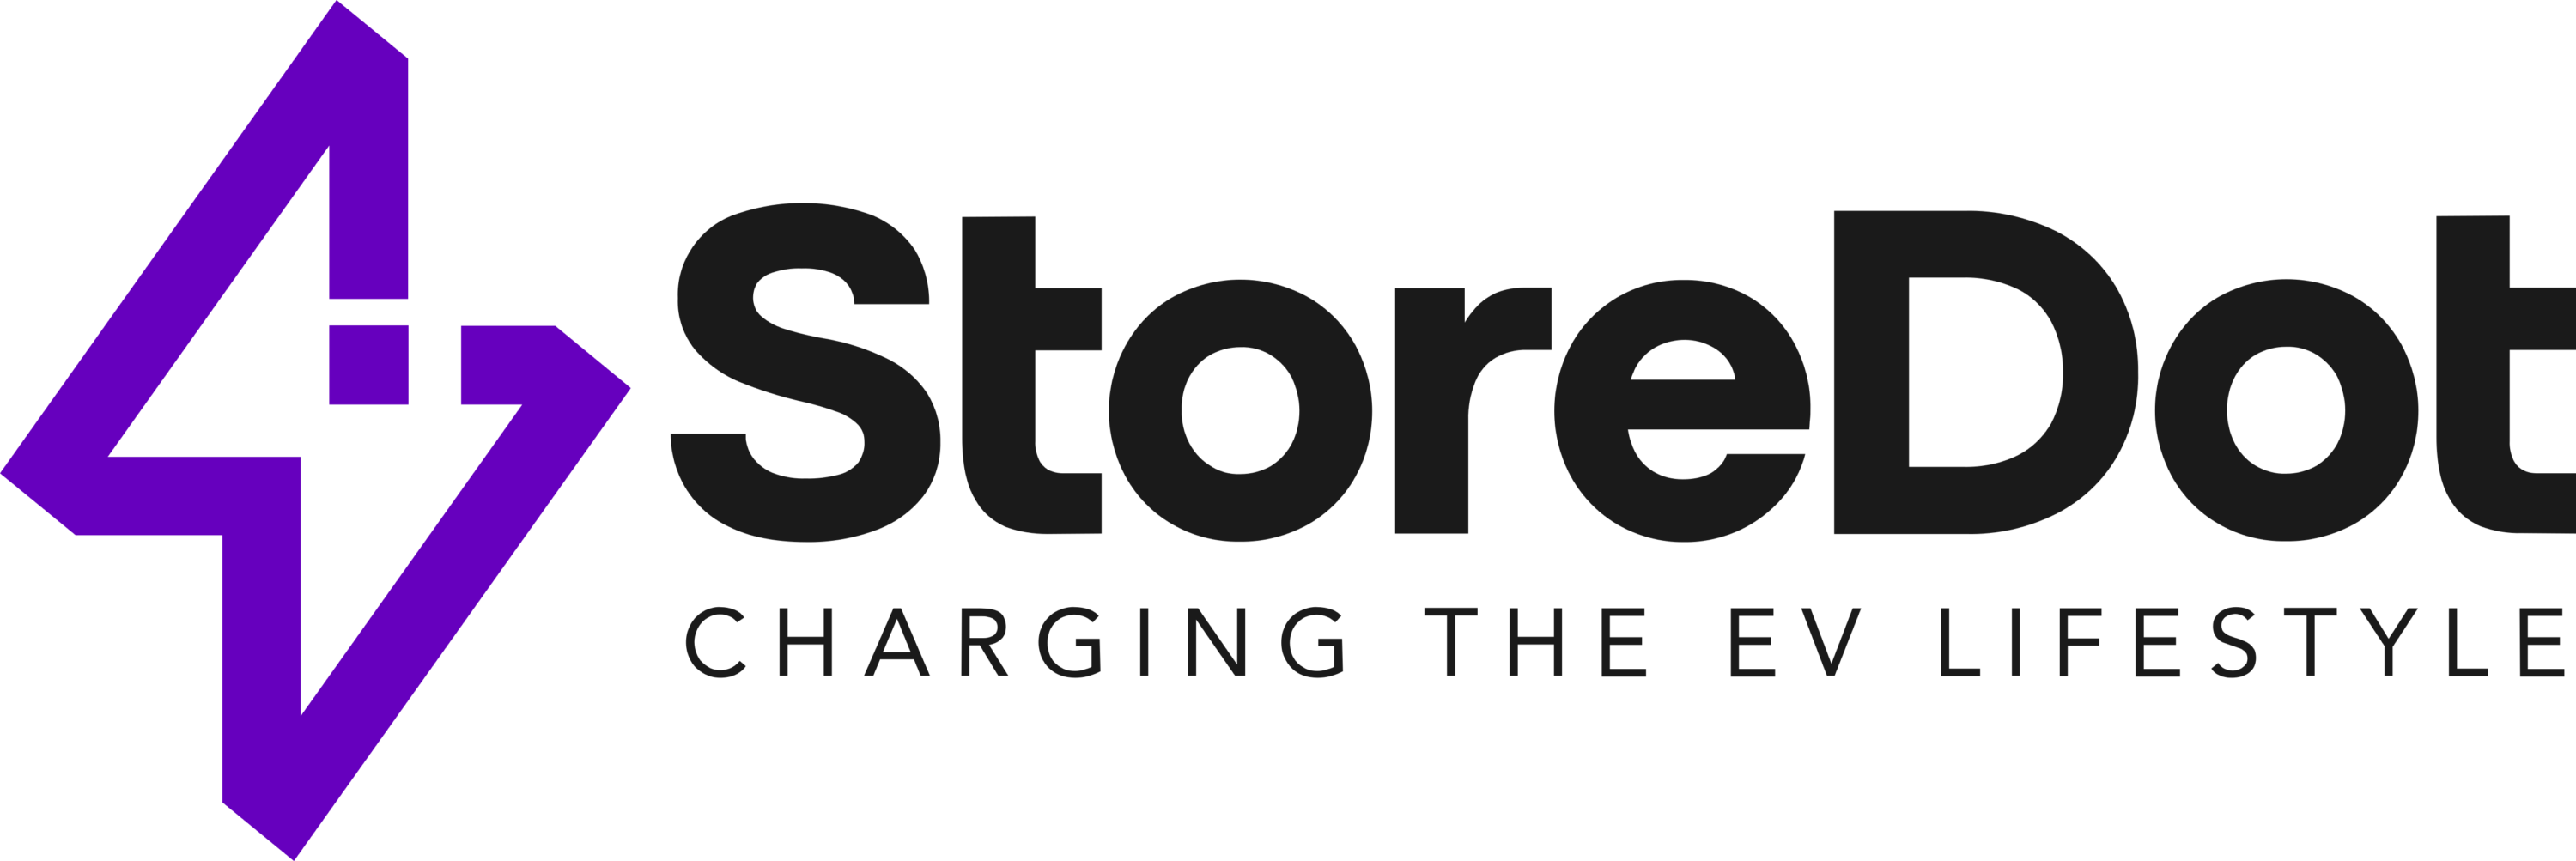 StoreDot Logo